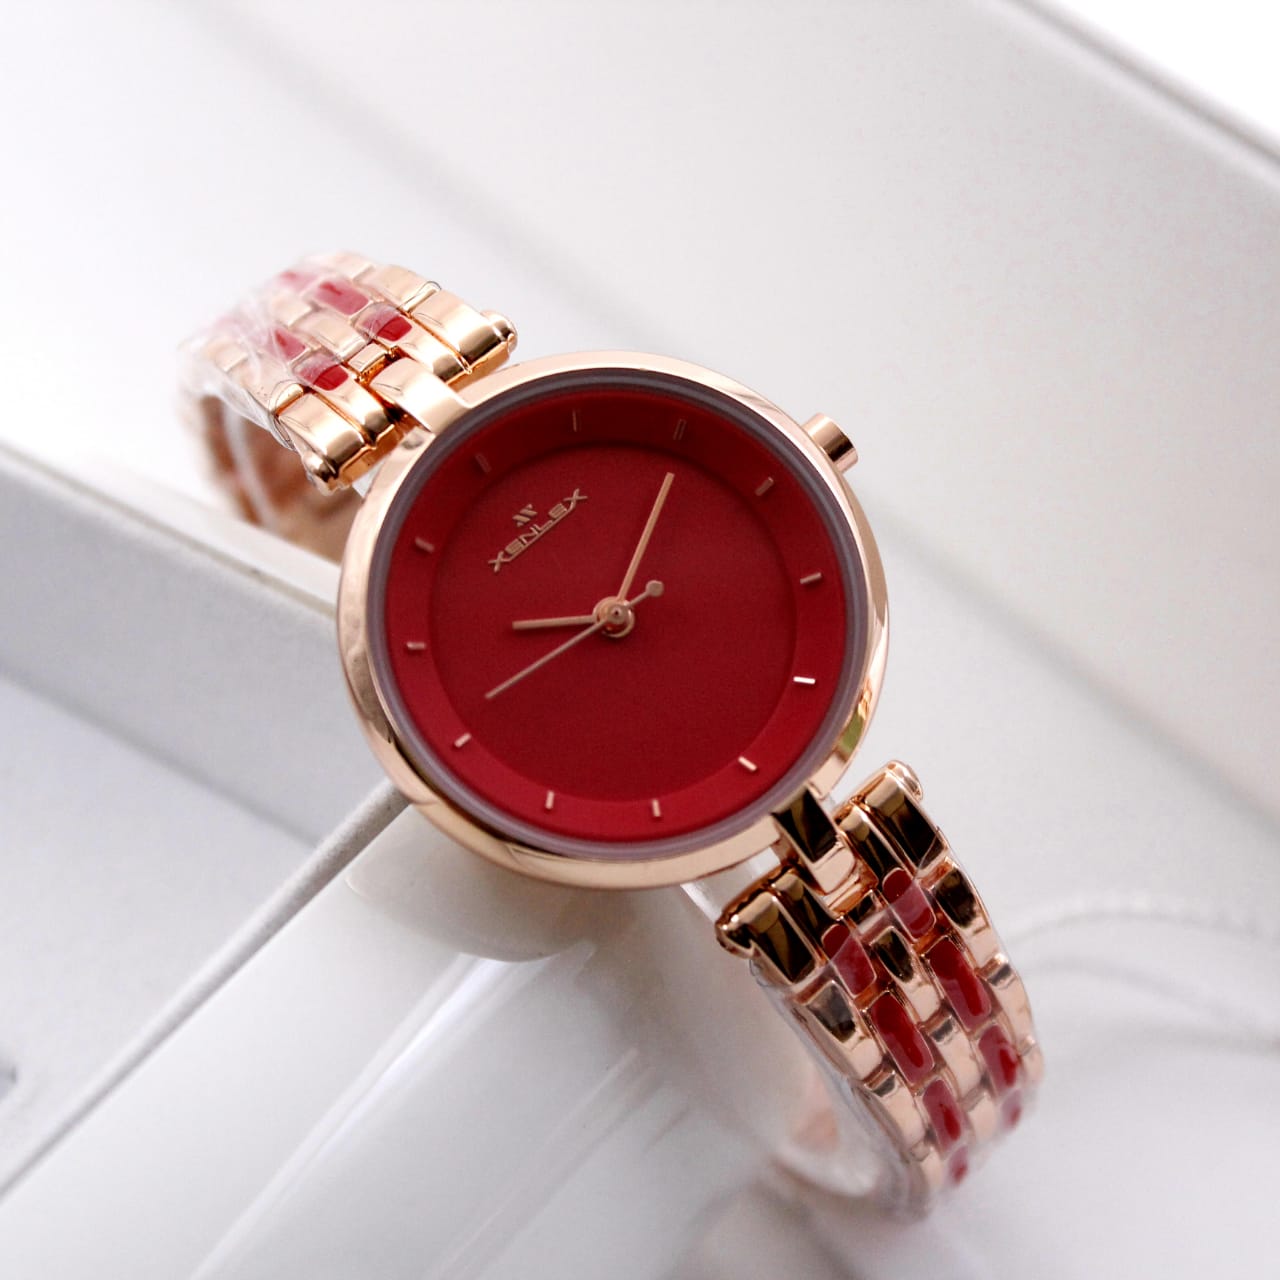 Get Beautiful Rose Gold Watch For Women